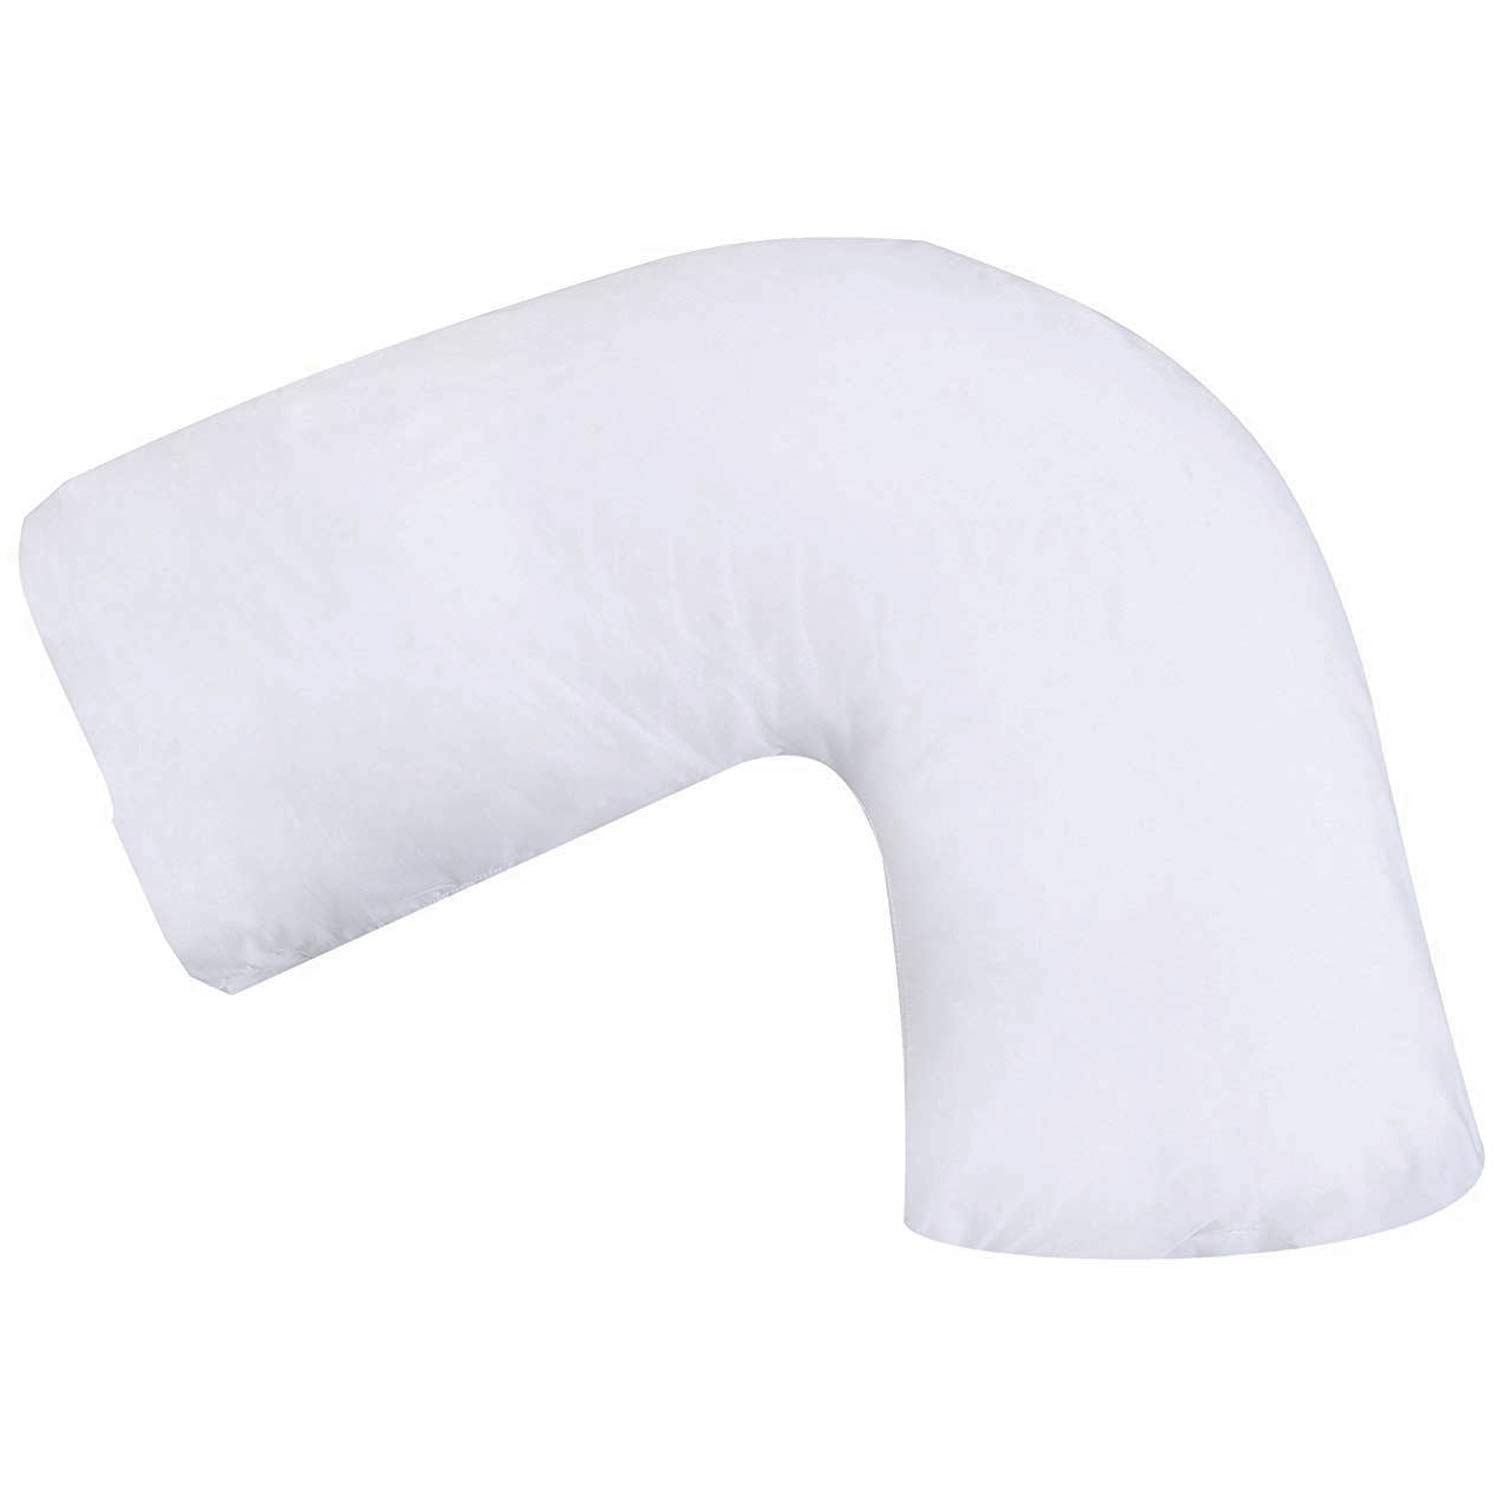 DMI Hugg-A-Pillow Hypoallergenic Bed Pillow